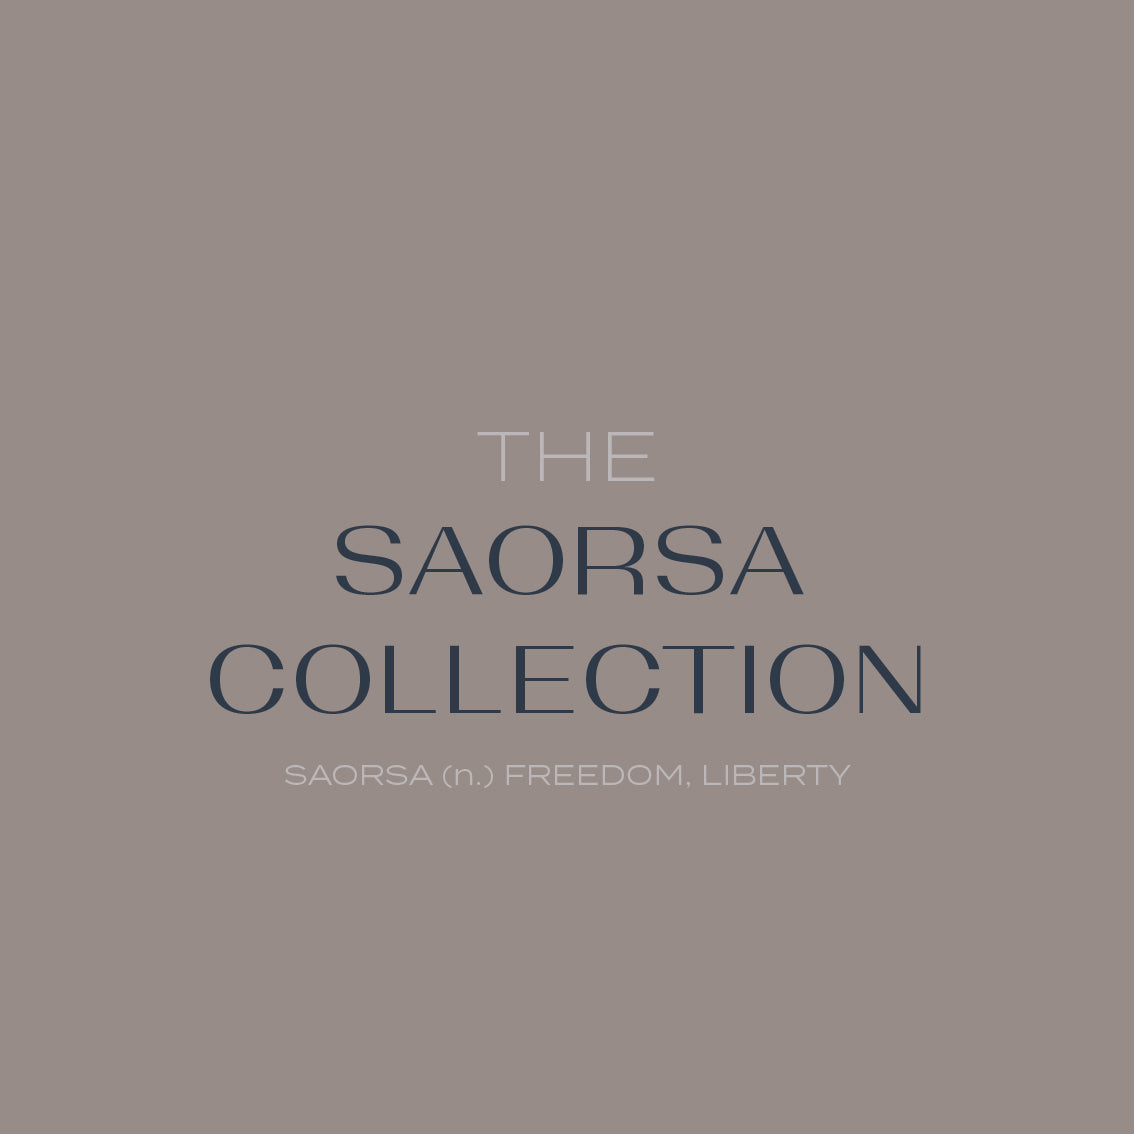 The Saorsa Collection